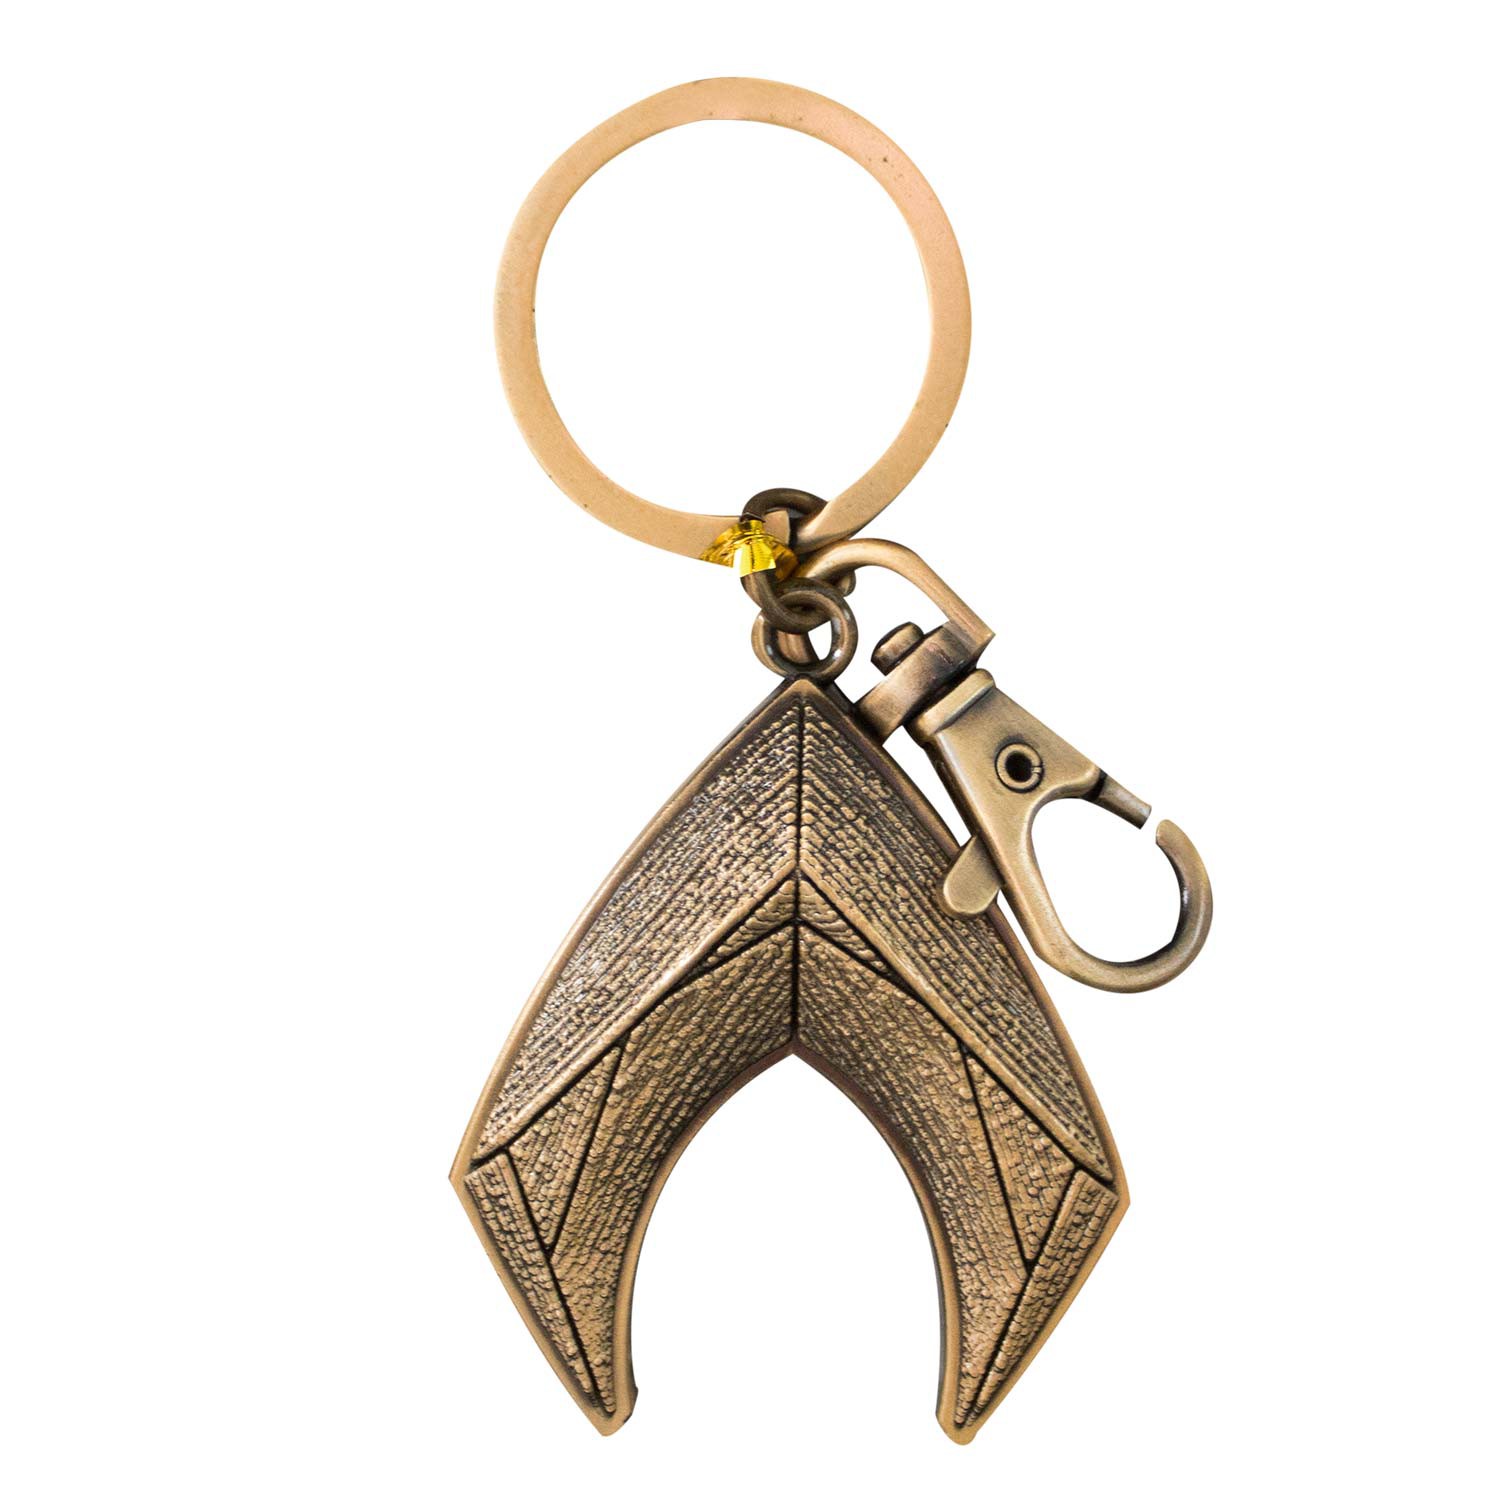 Aquaman Logo Keychain